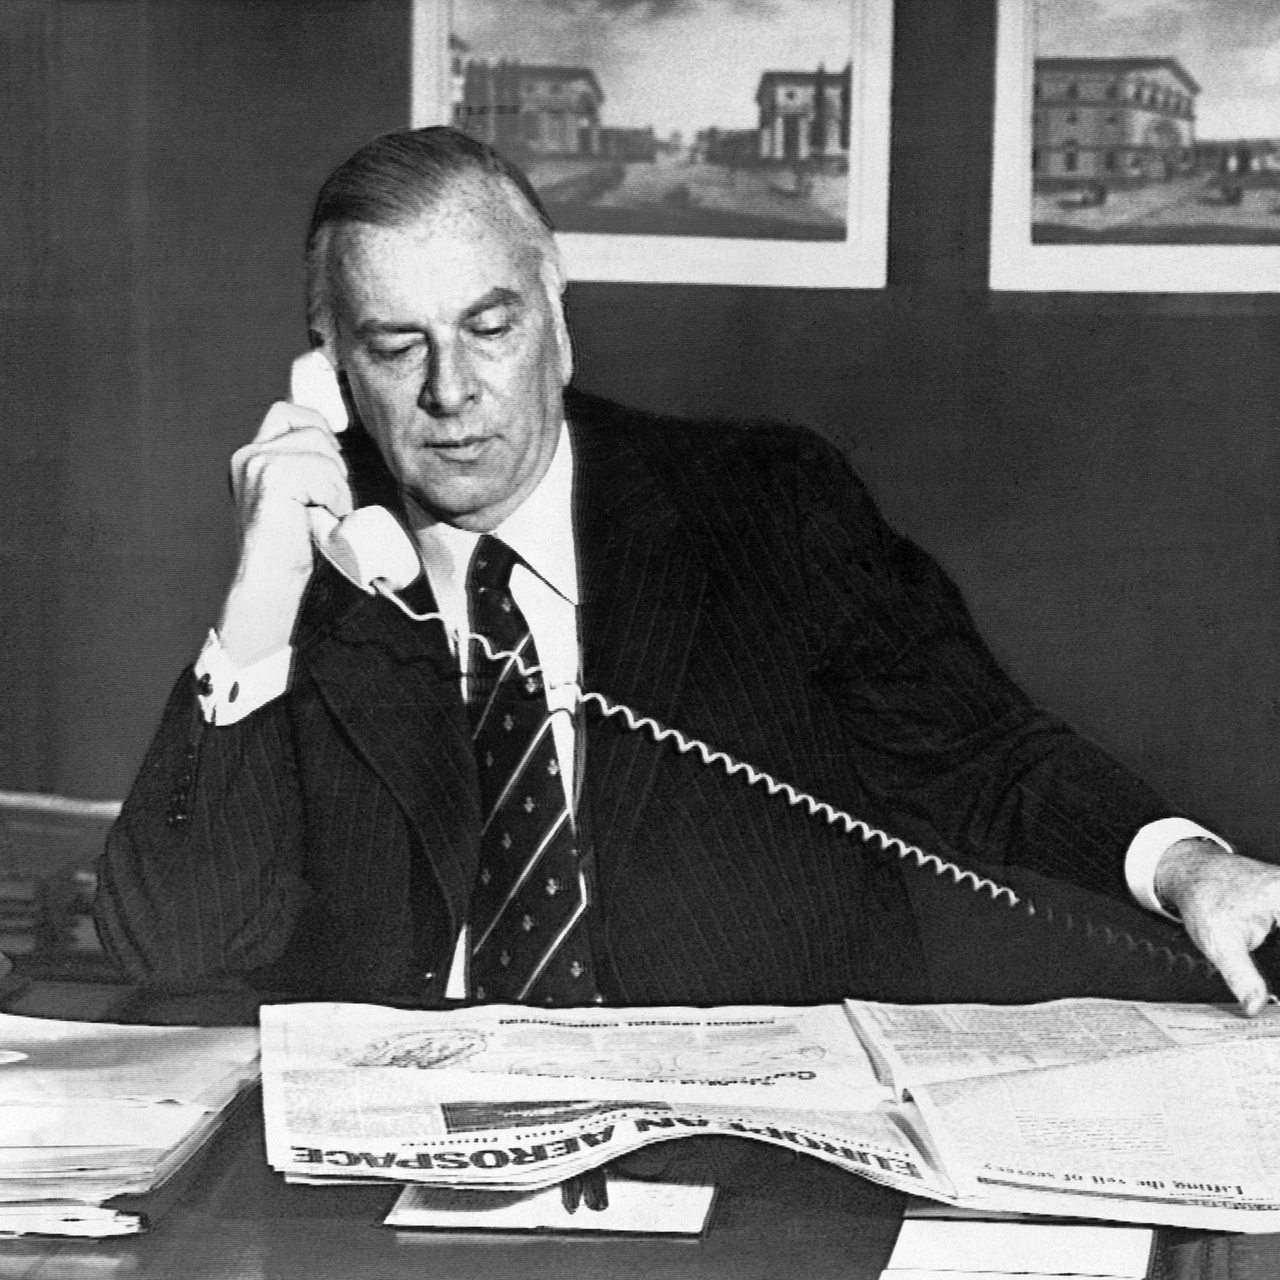 Der deutsche Bankier Jürgen Ponto, Vorstandssprecher der Dresdner Bank, aufgenommen bei einem Telefonat an seinem Schreibtisch. (Archivbild)